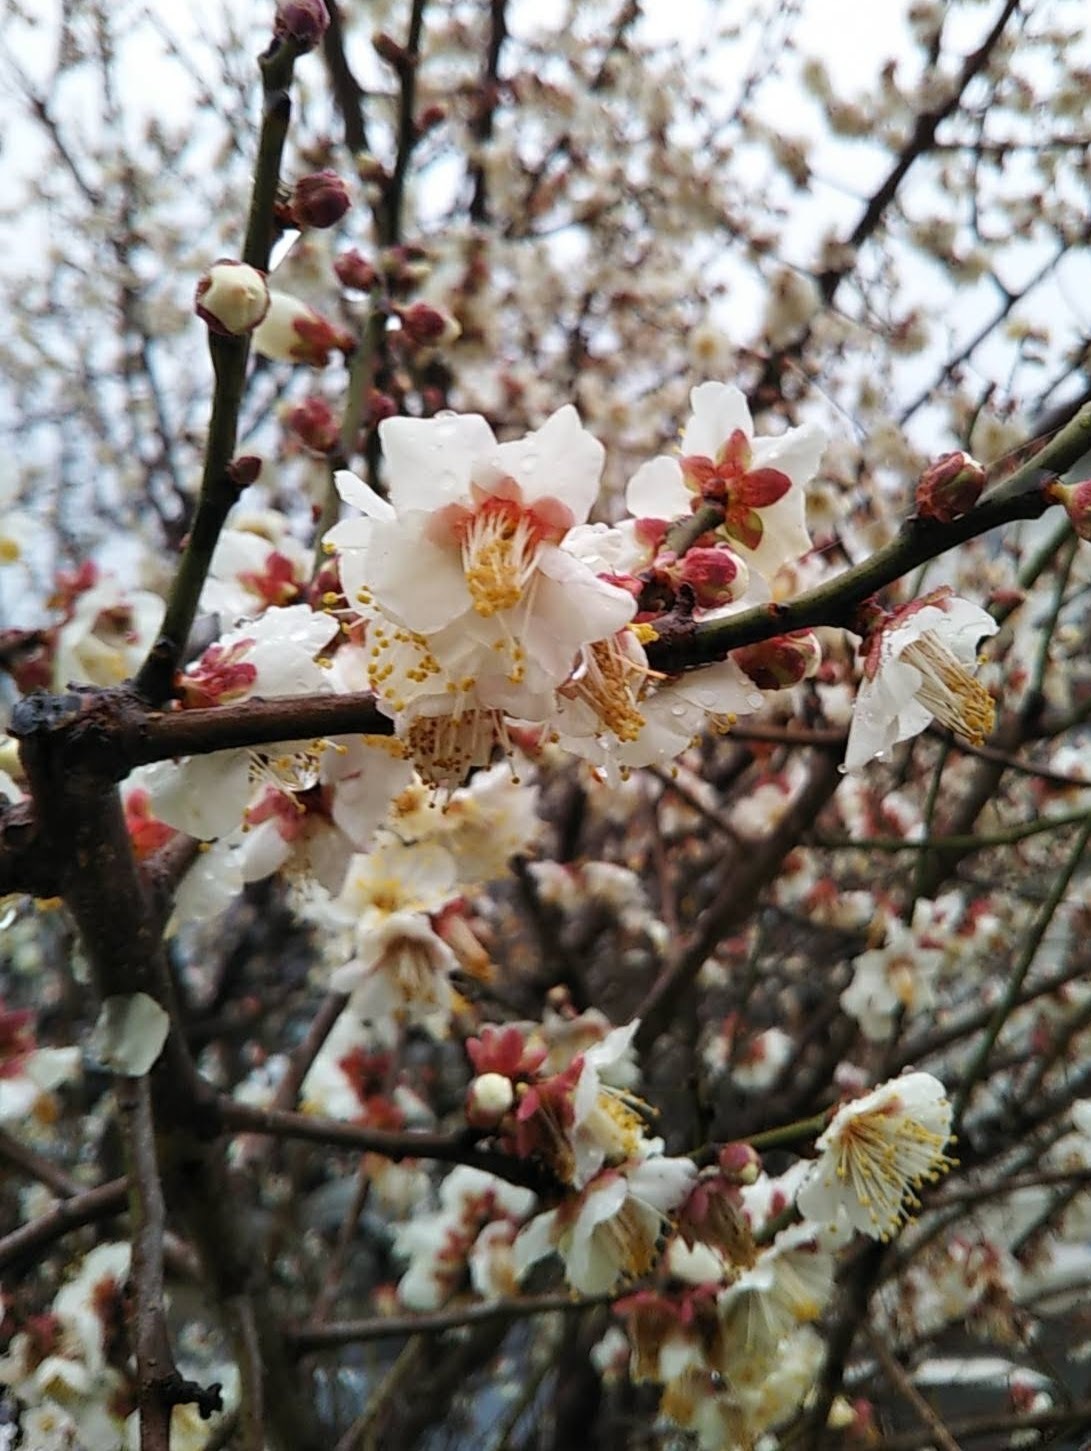 梅は満開、河津桜は5部咲き、冷たい雨に降られても春は来ているね。いままでやらなかったことをしてみた